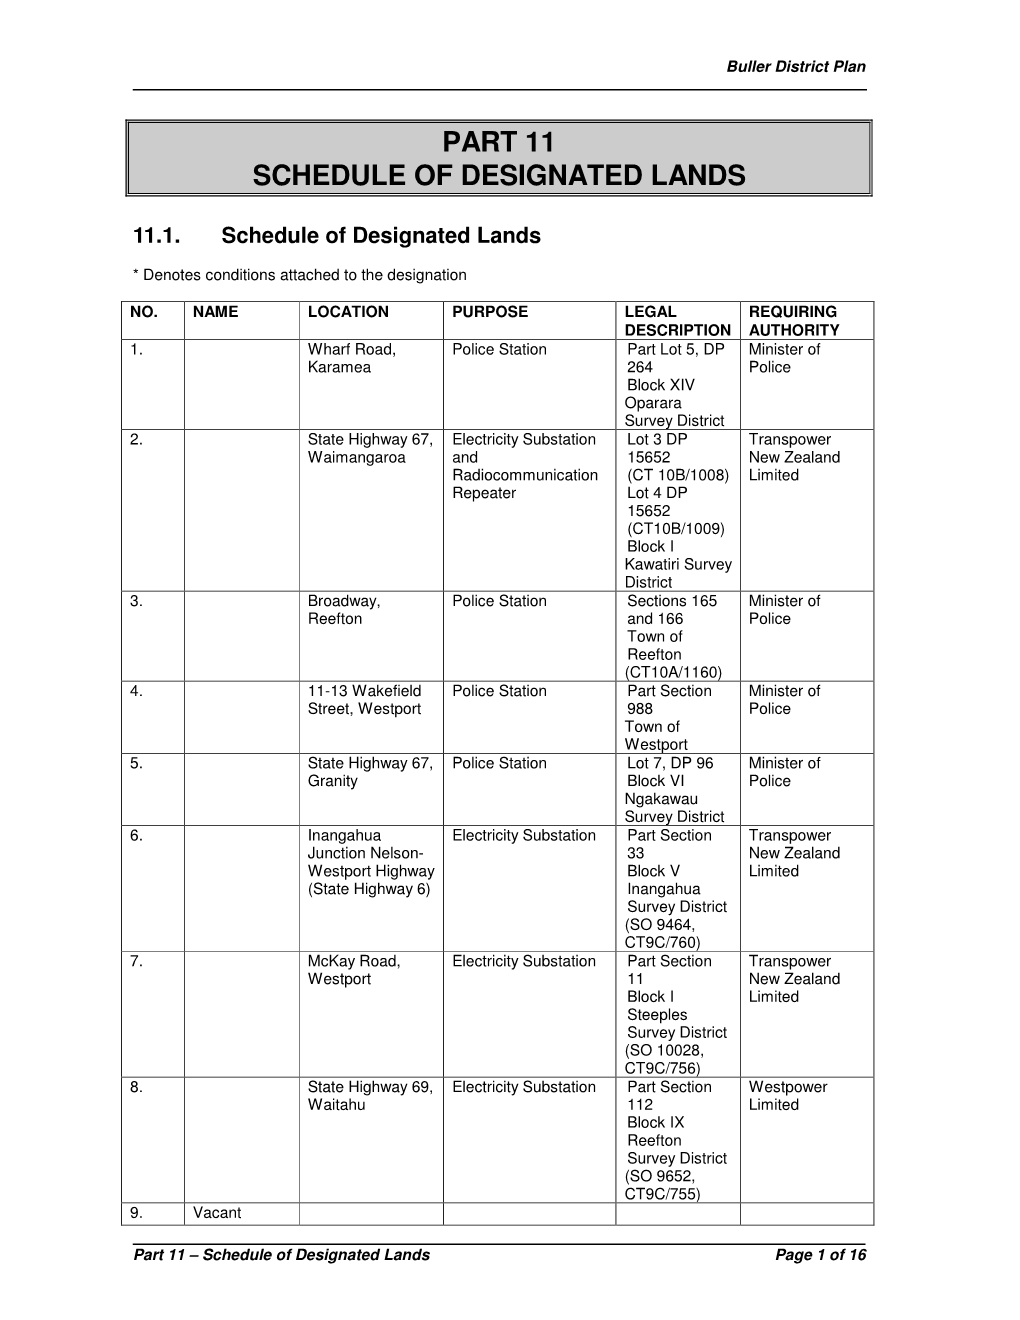 Part 11 Schedule of Designated Lands